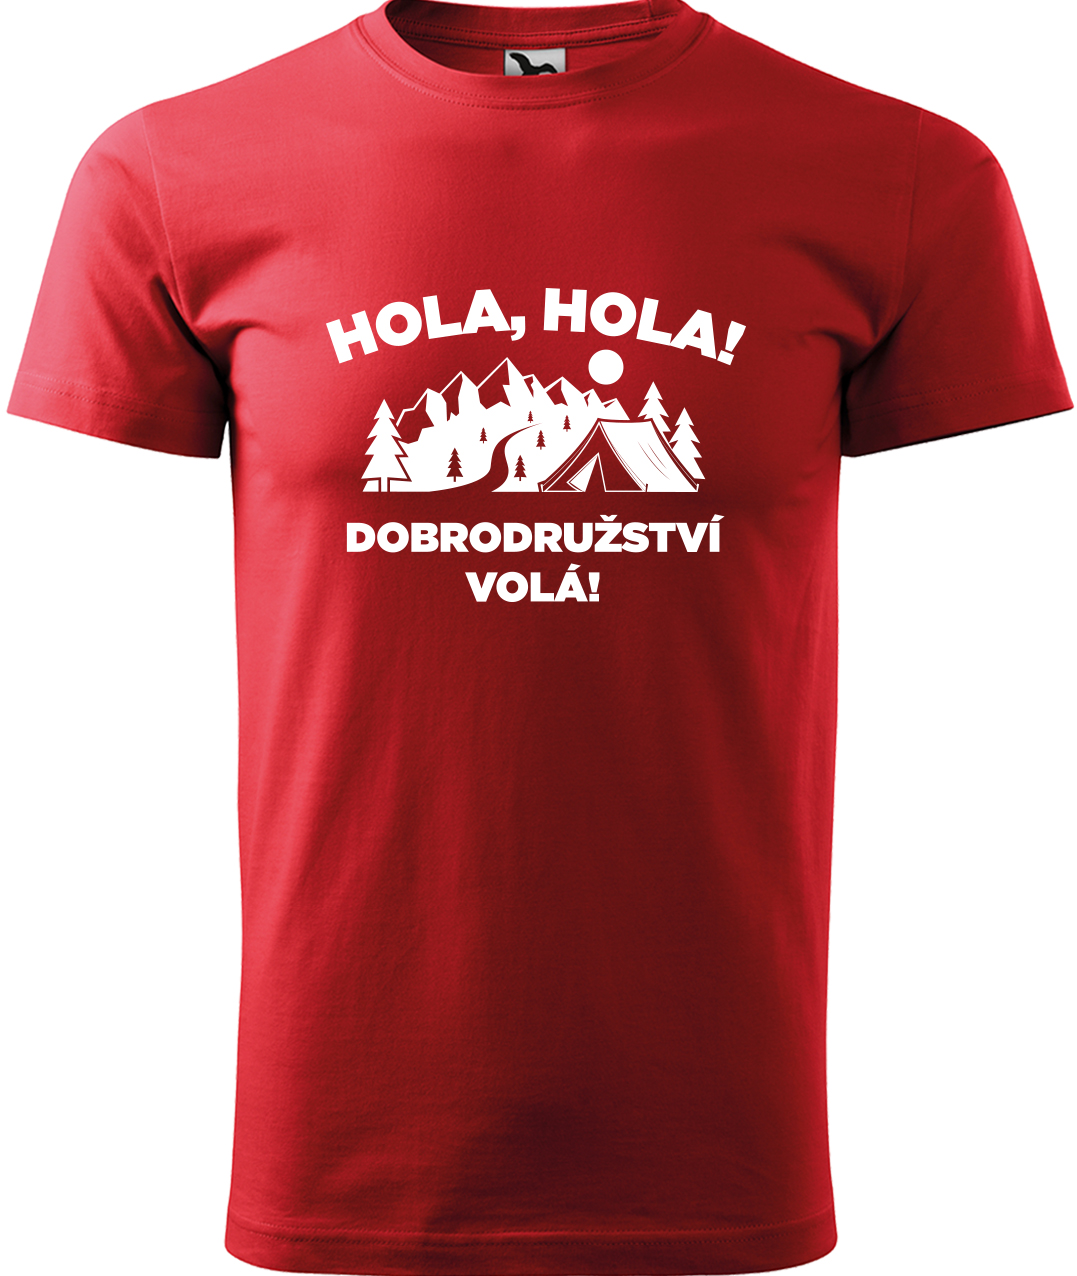 Pánské cestovatelské tričko - Hola hola! Dobrodružství volá! Velikost: 3XL, Barva: Červená (07), Střih: pánský